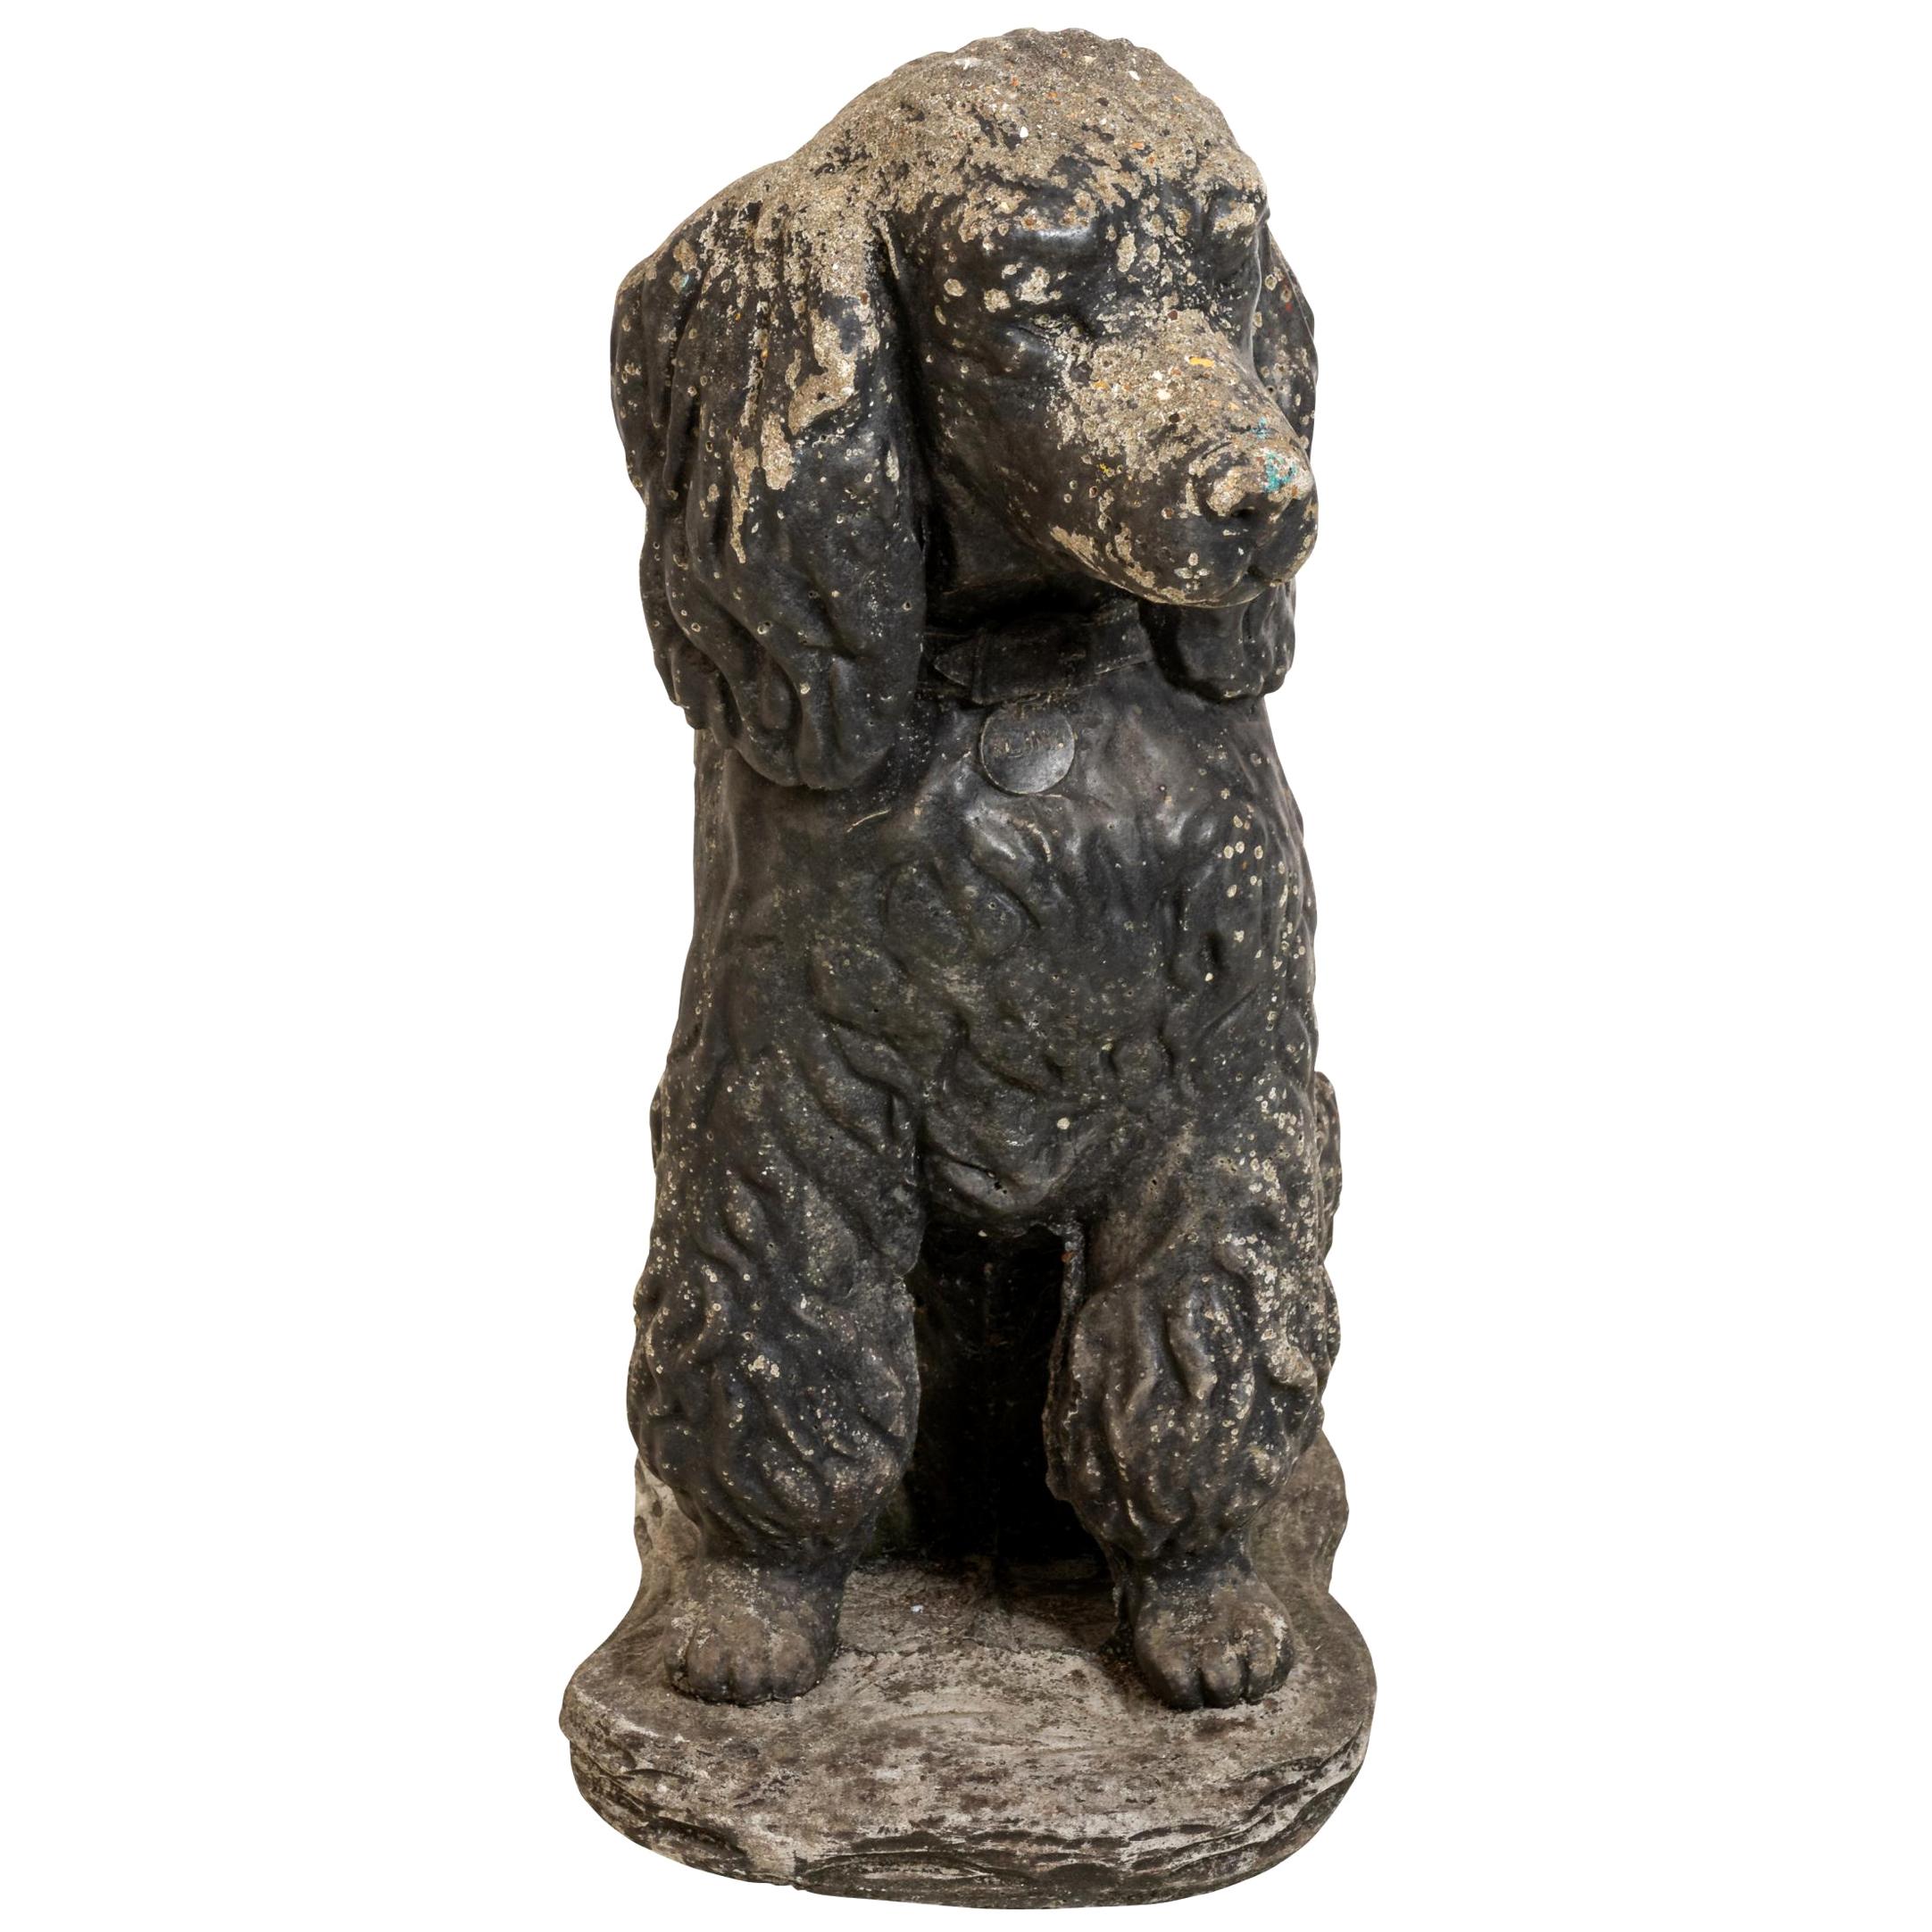 Antique Poodle Dog Garden Ornament